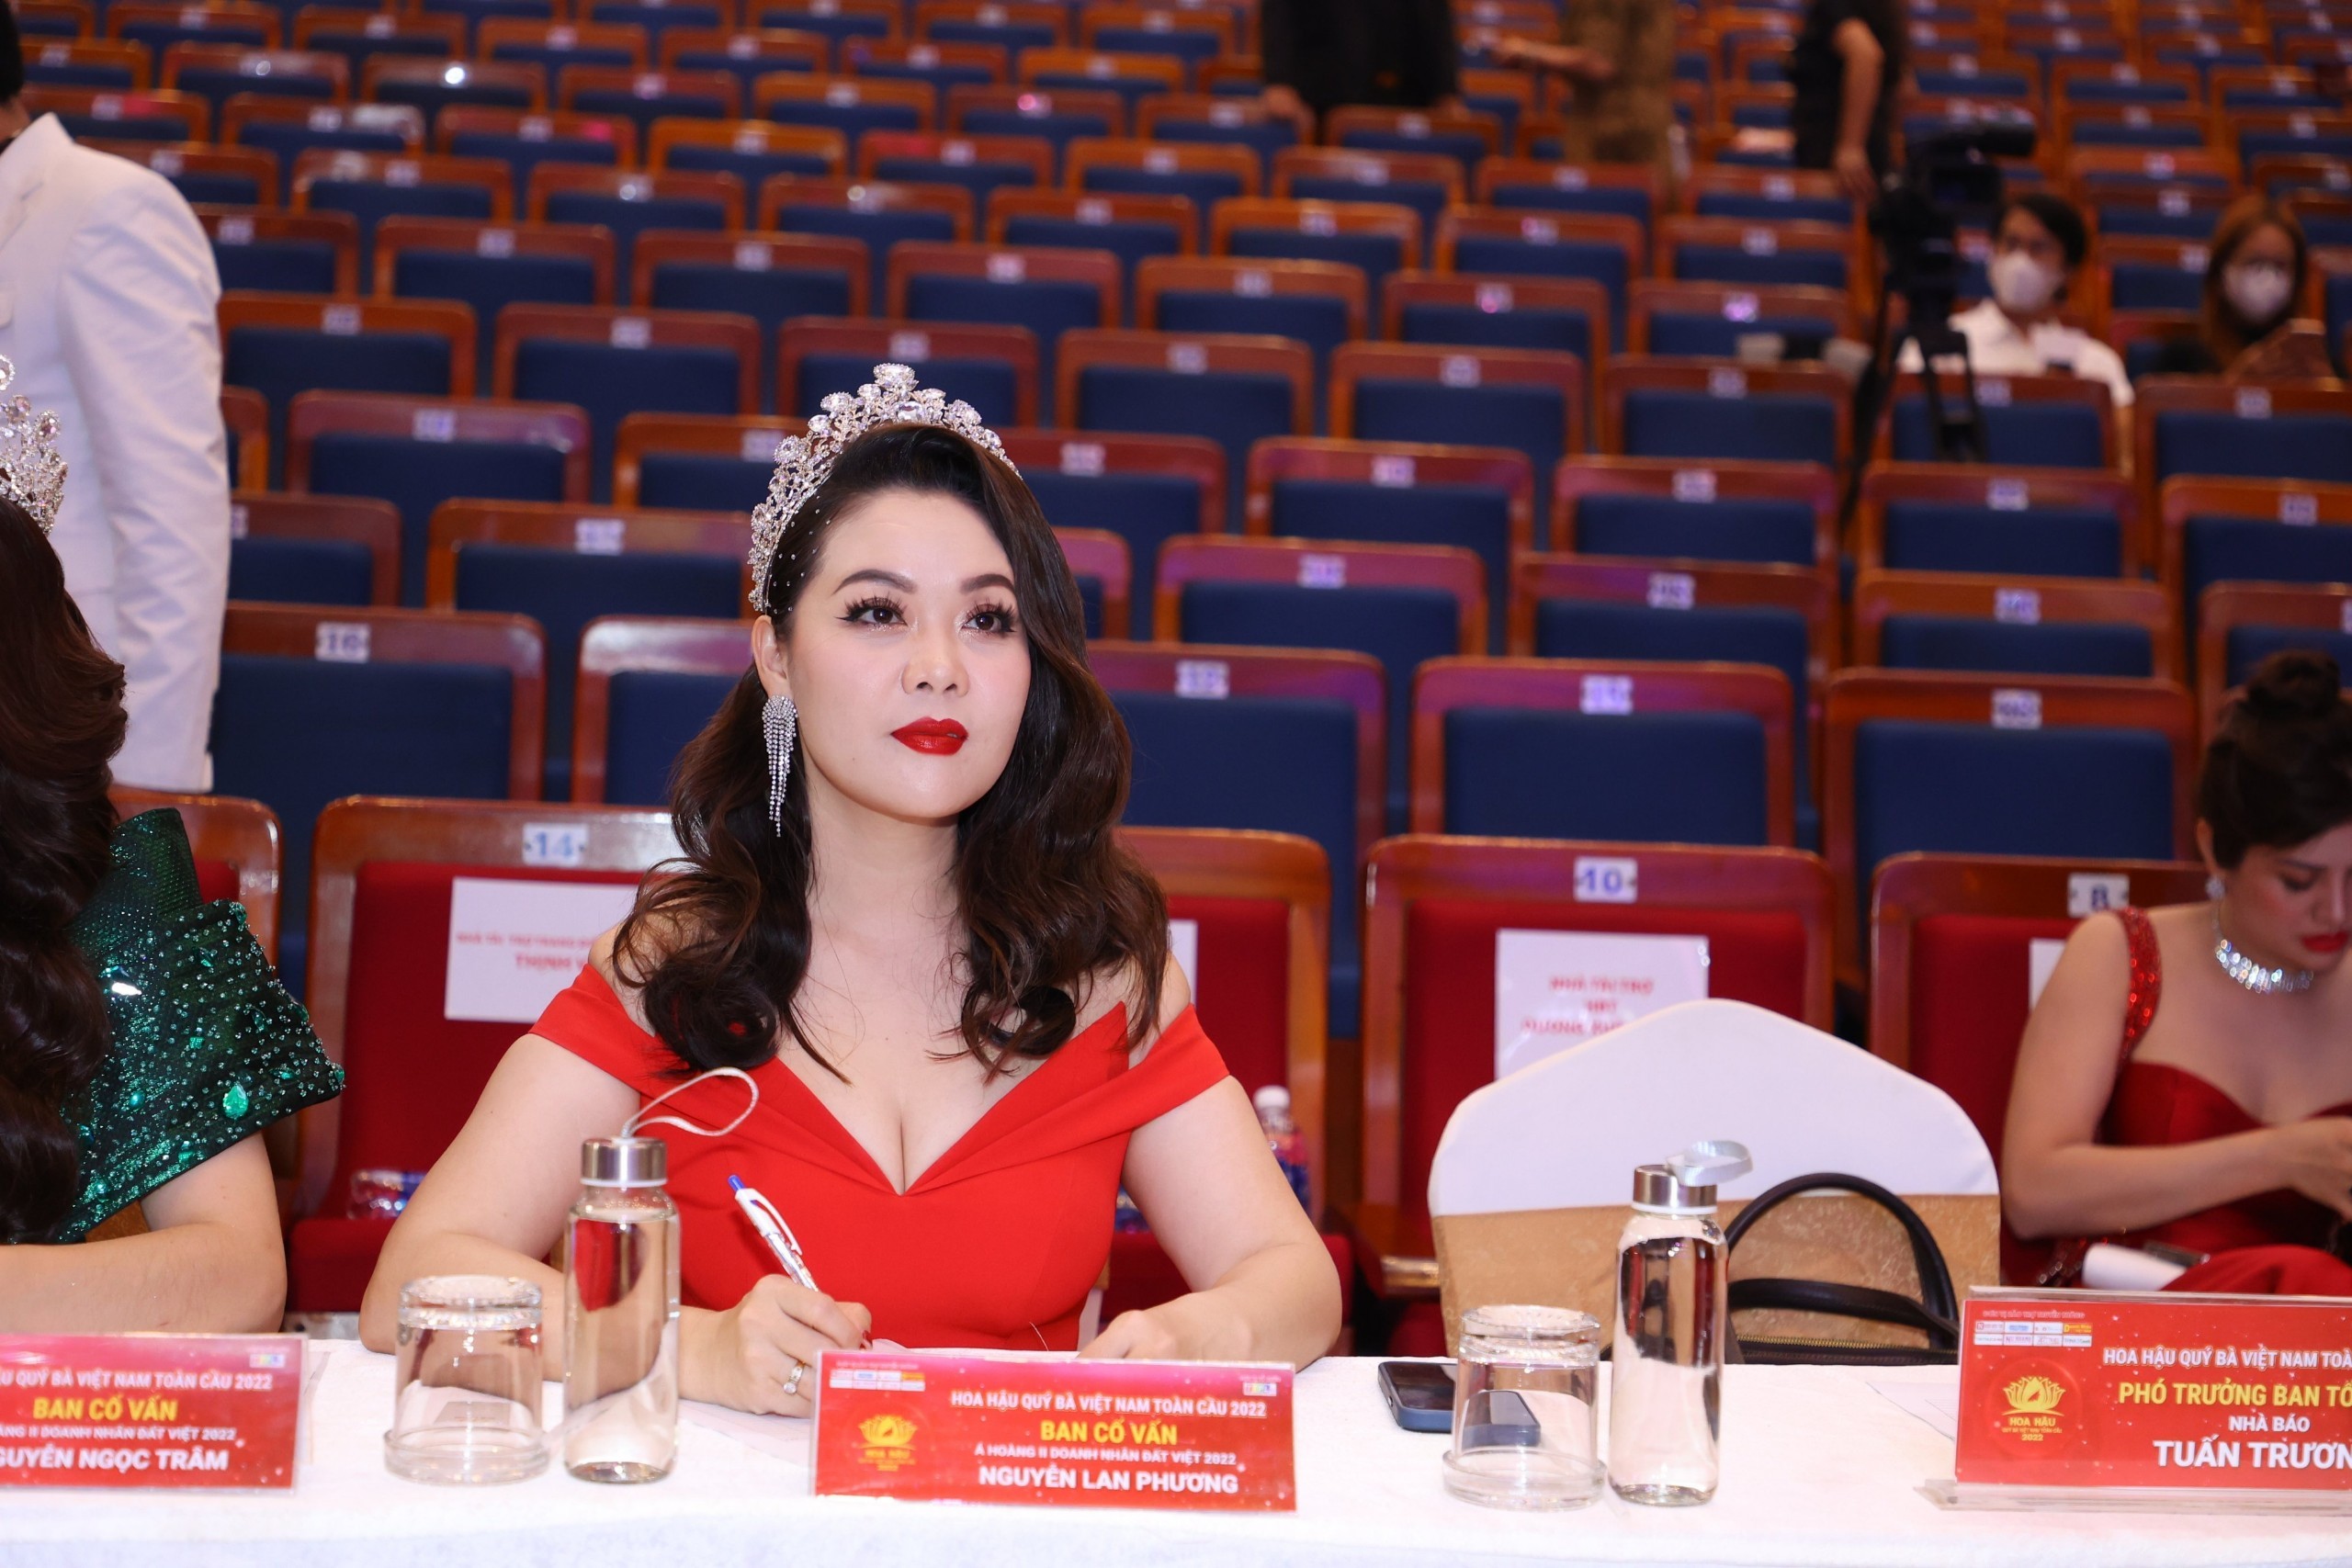 Á hoàng 2 Nguyễn Thị Lan Phương được mời làm giám khảo Hoa hậu Quý bà Việt Nam Toàn cầu 2022